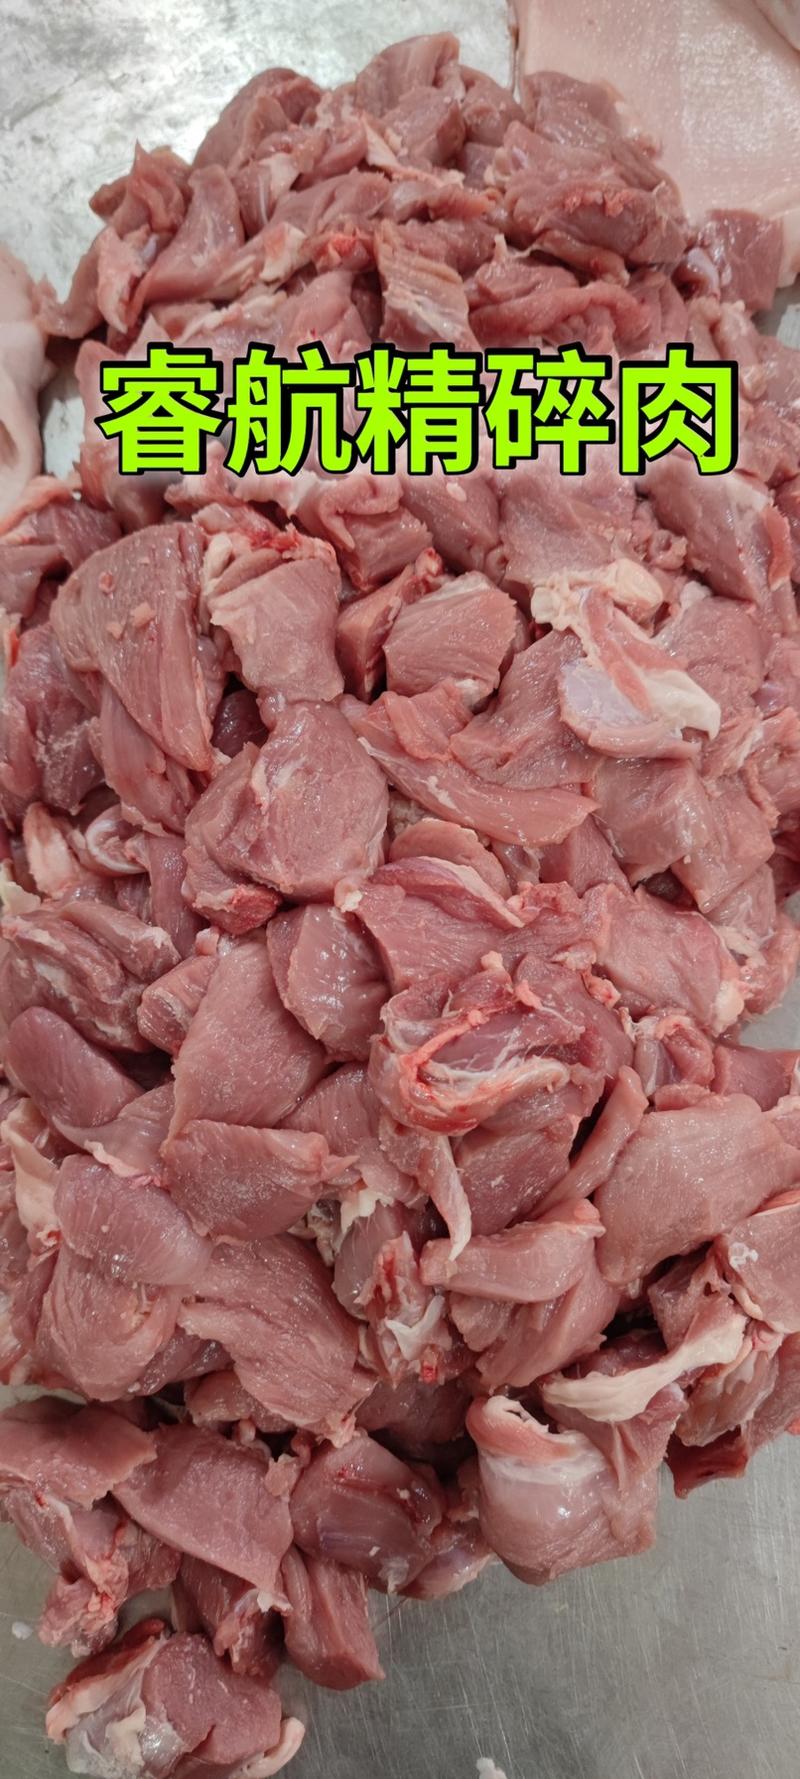 碎精肉大量供应厂家直销质量有保证量大价优全国发货